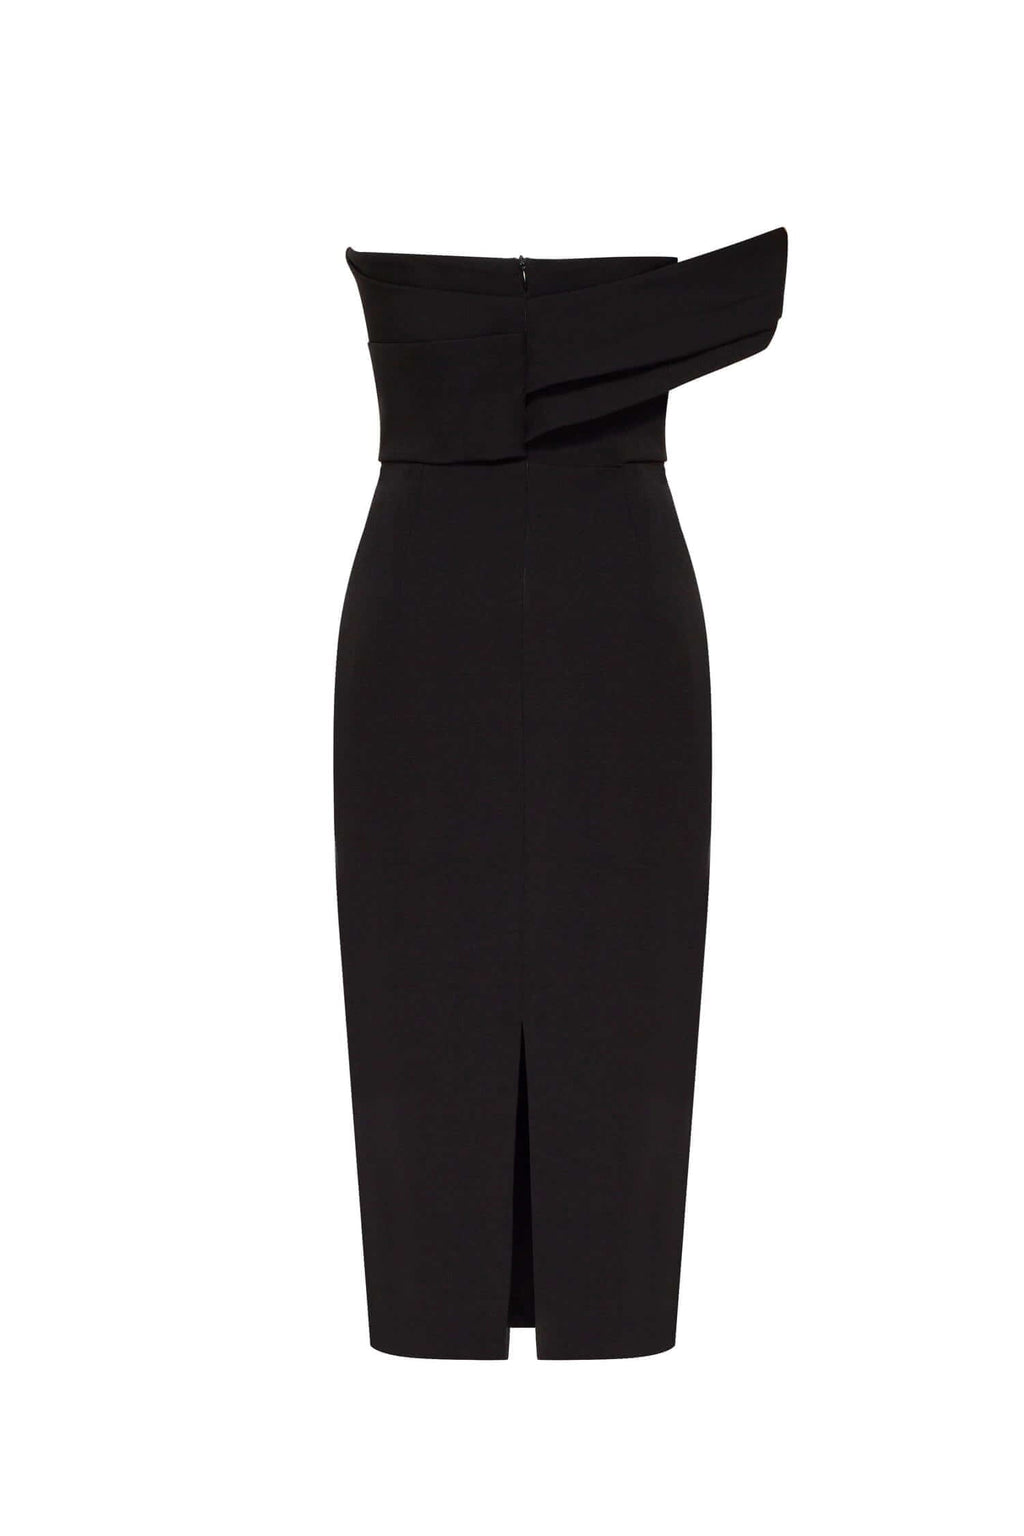 Black Classy midi dress with open neckline - Milla